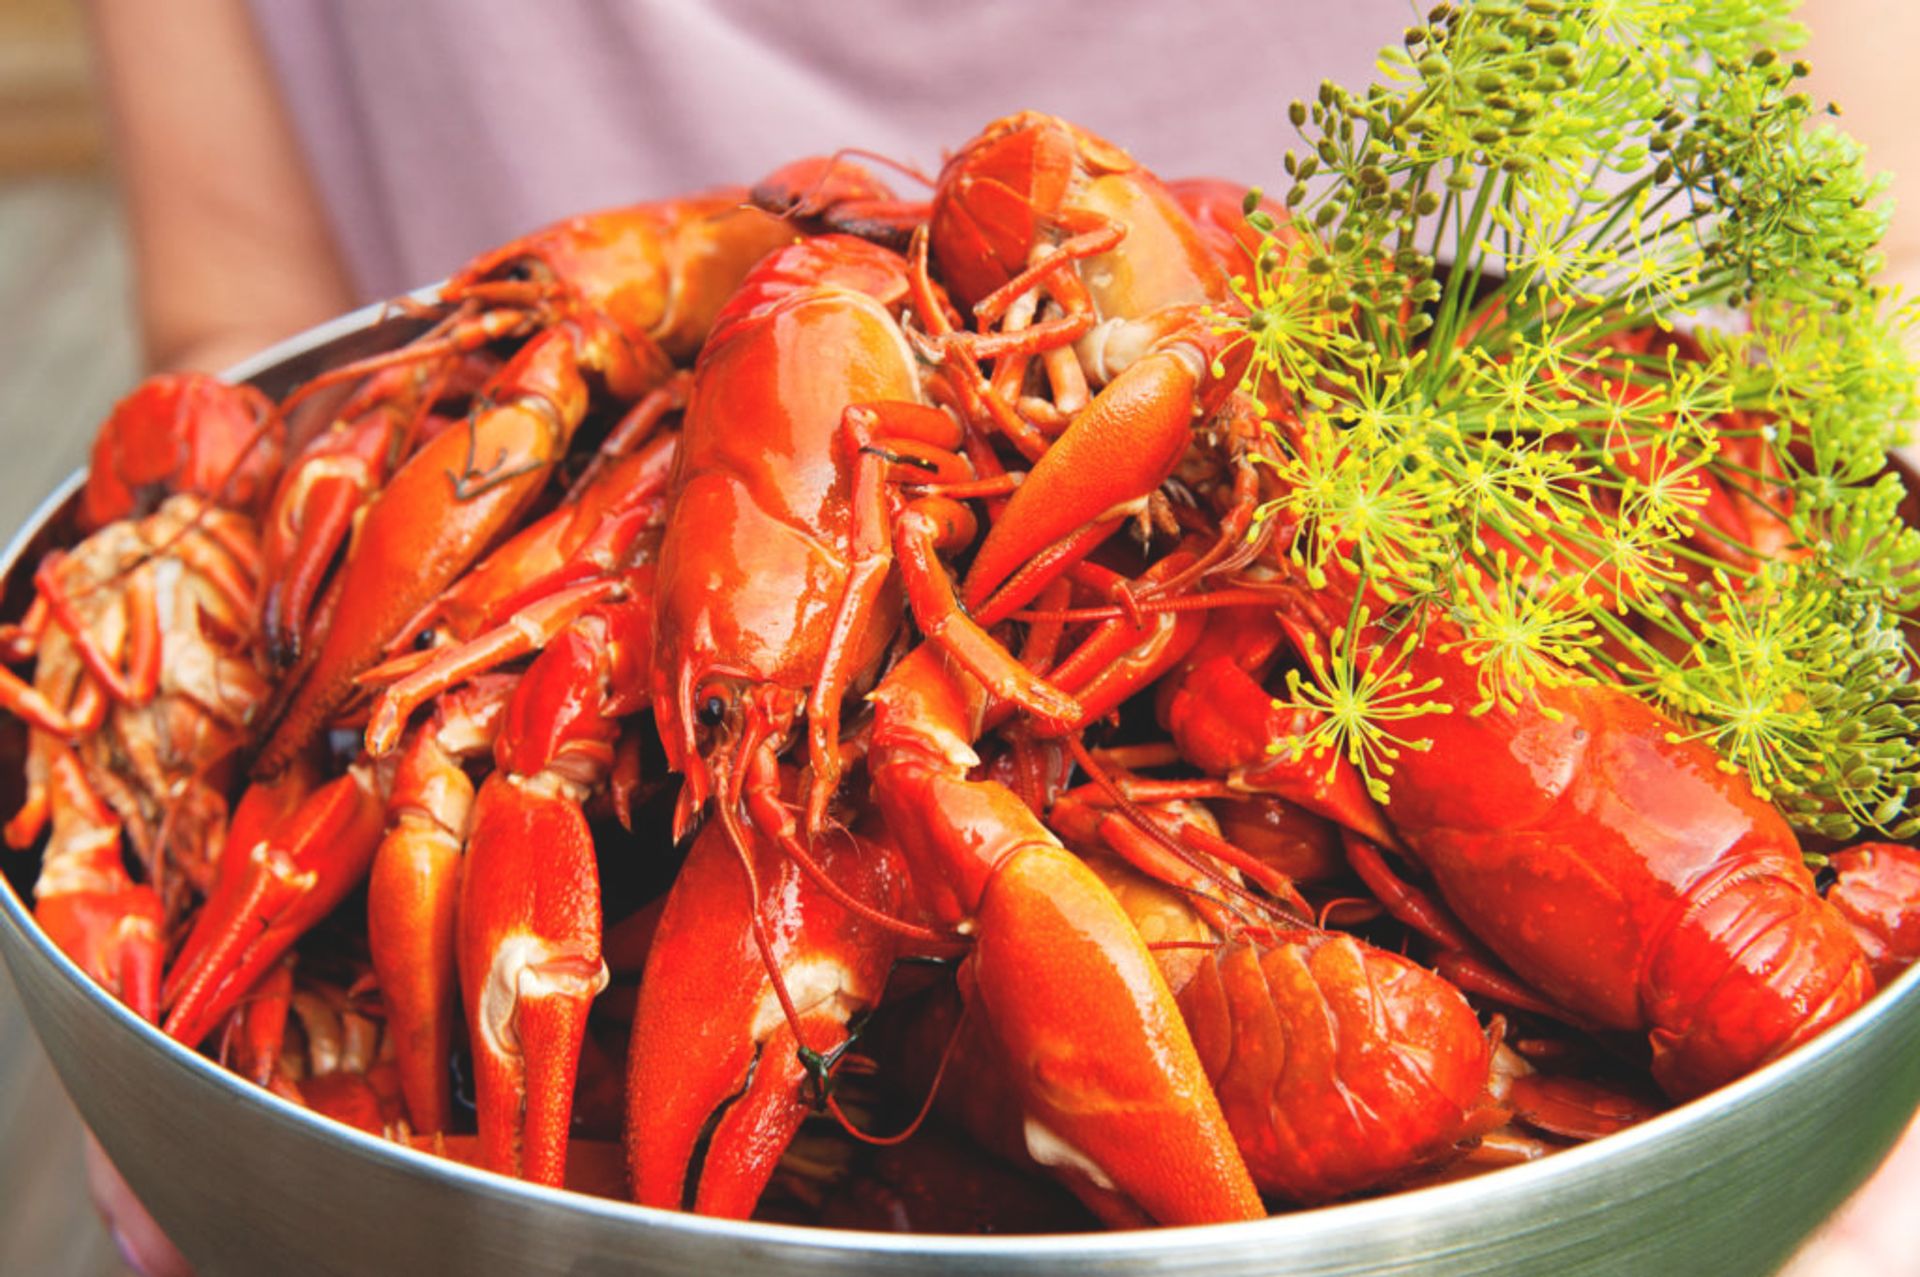 Close-up of a bowl of crayfish.